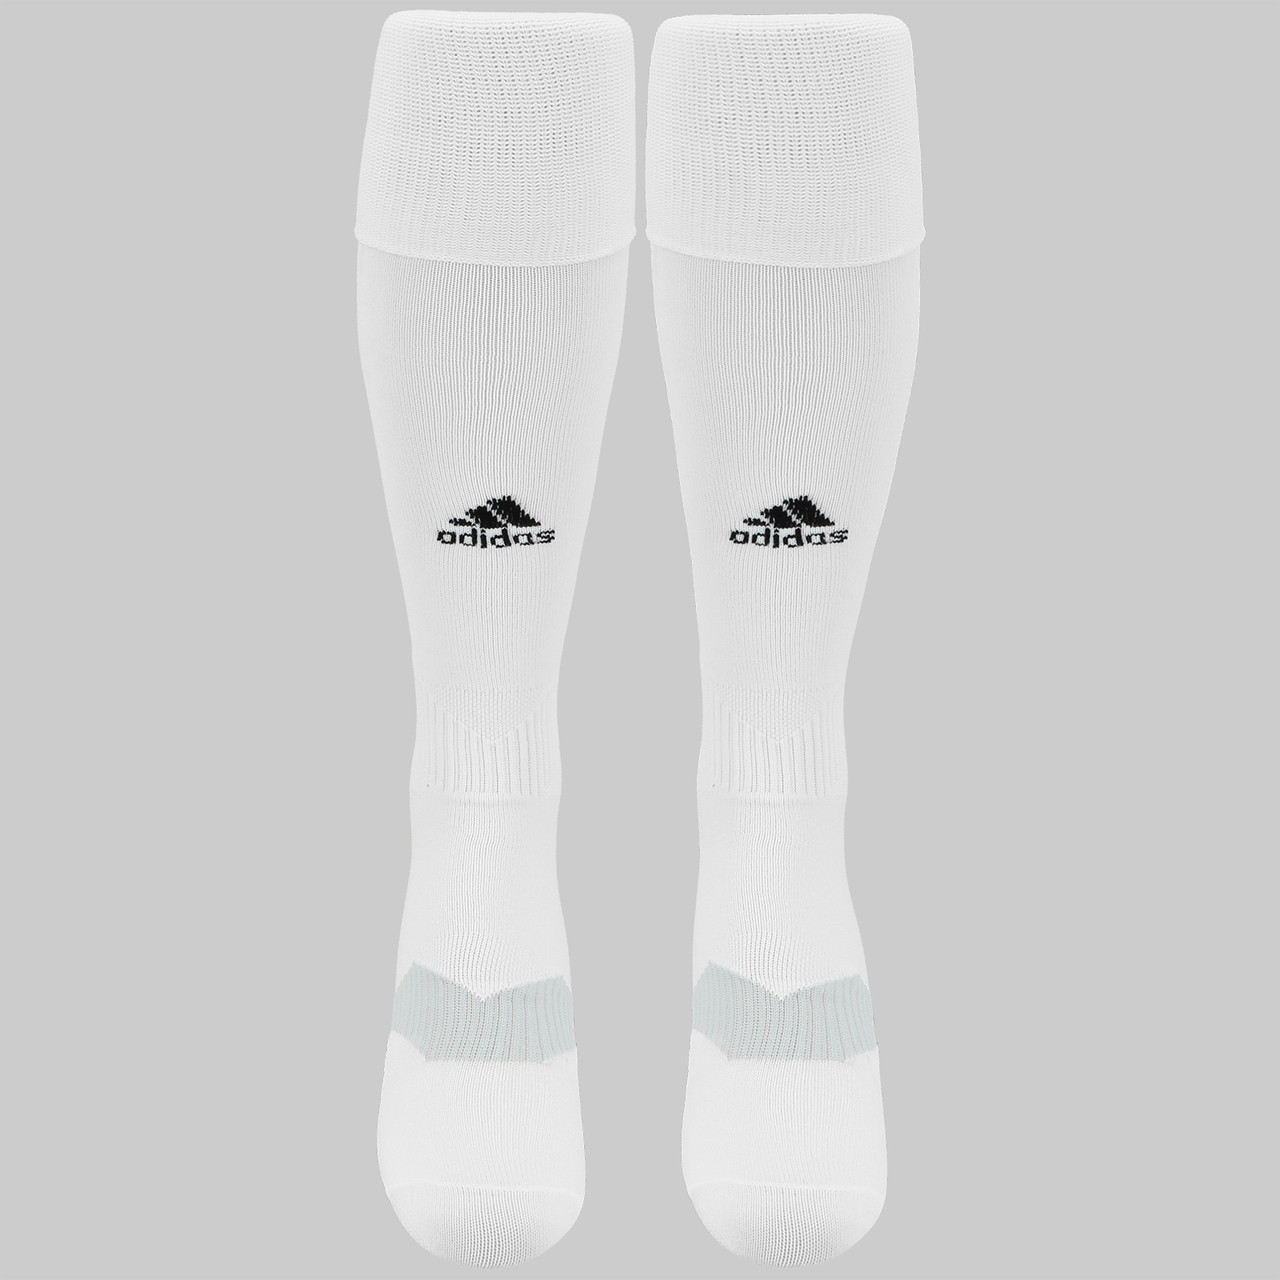 adidas soccer socks canada